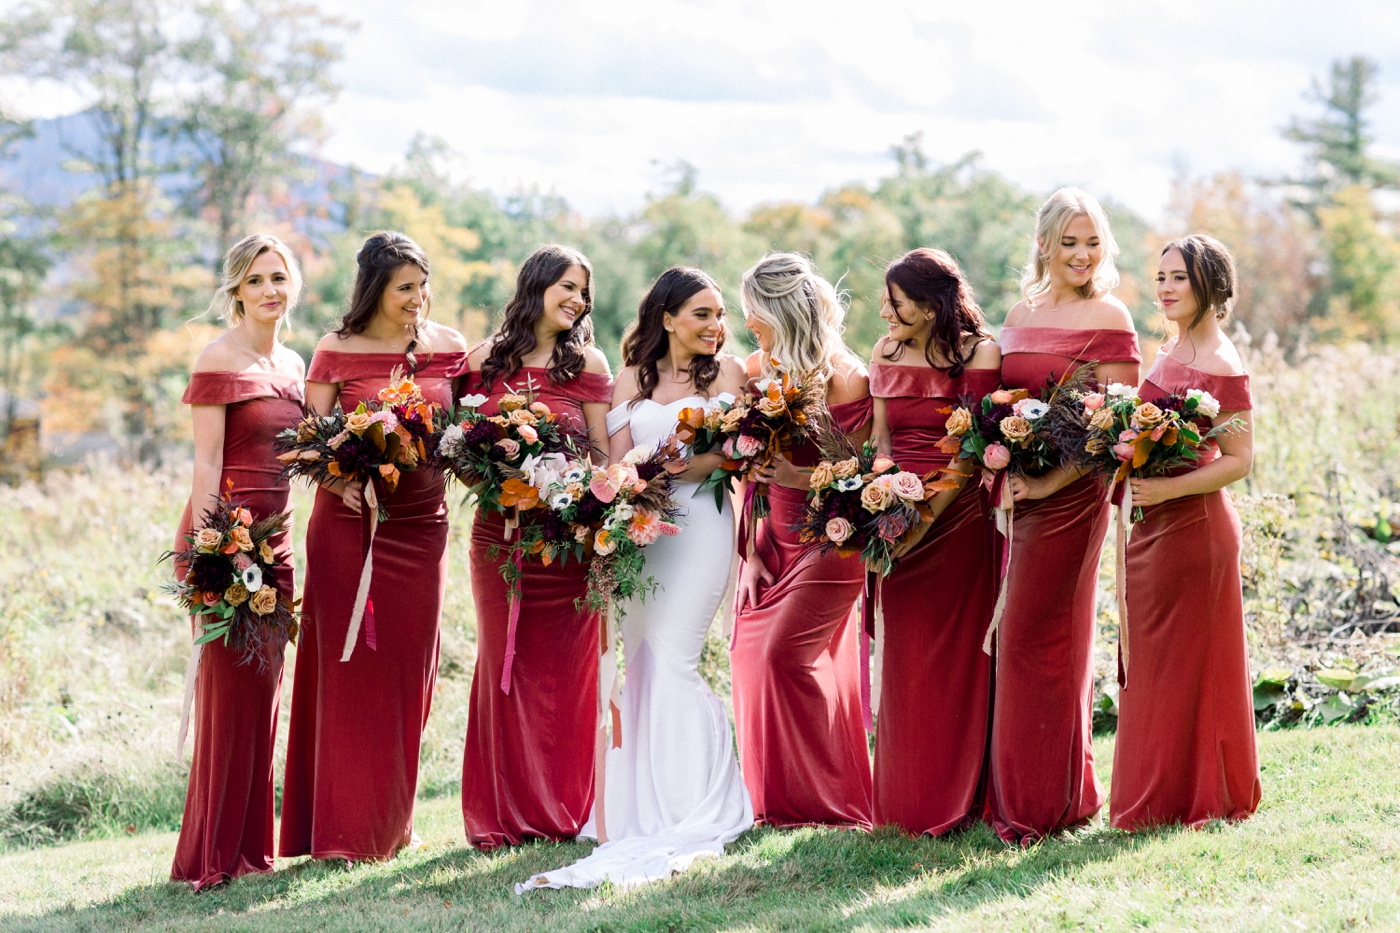 Classic, Elegant Wedding - Bridesmaids in velvet rust colored gowns